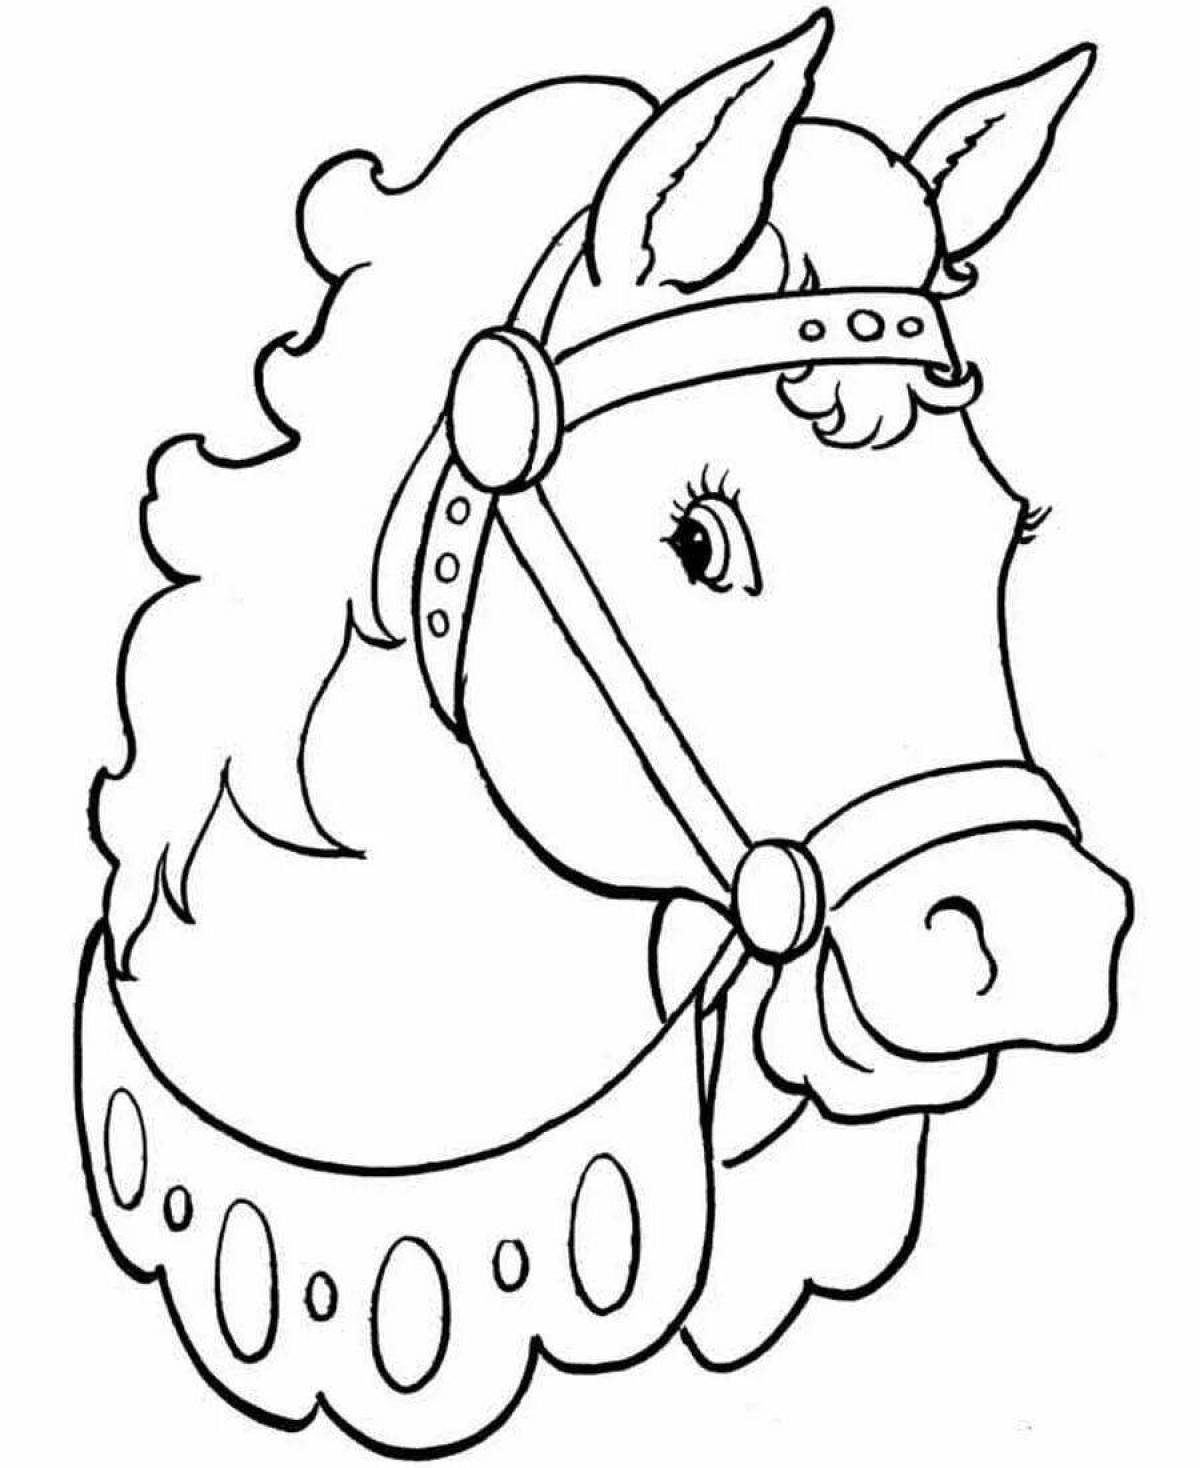 Раскрашиваем лошадку. Рисунки для раскраски. Раскраска. Лошади. Лошадка раскраска для детей. Рисунок лошади для раскрашивания.